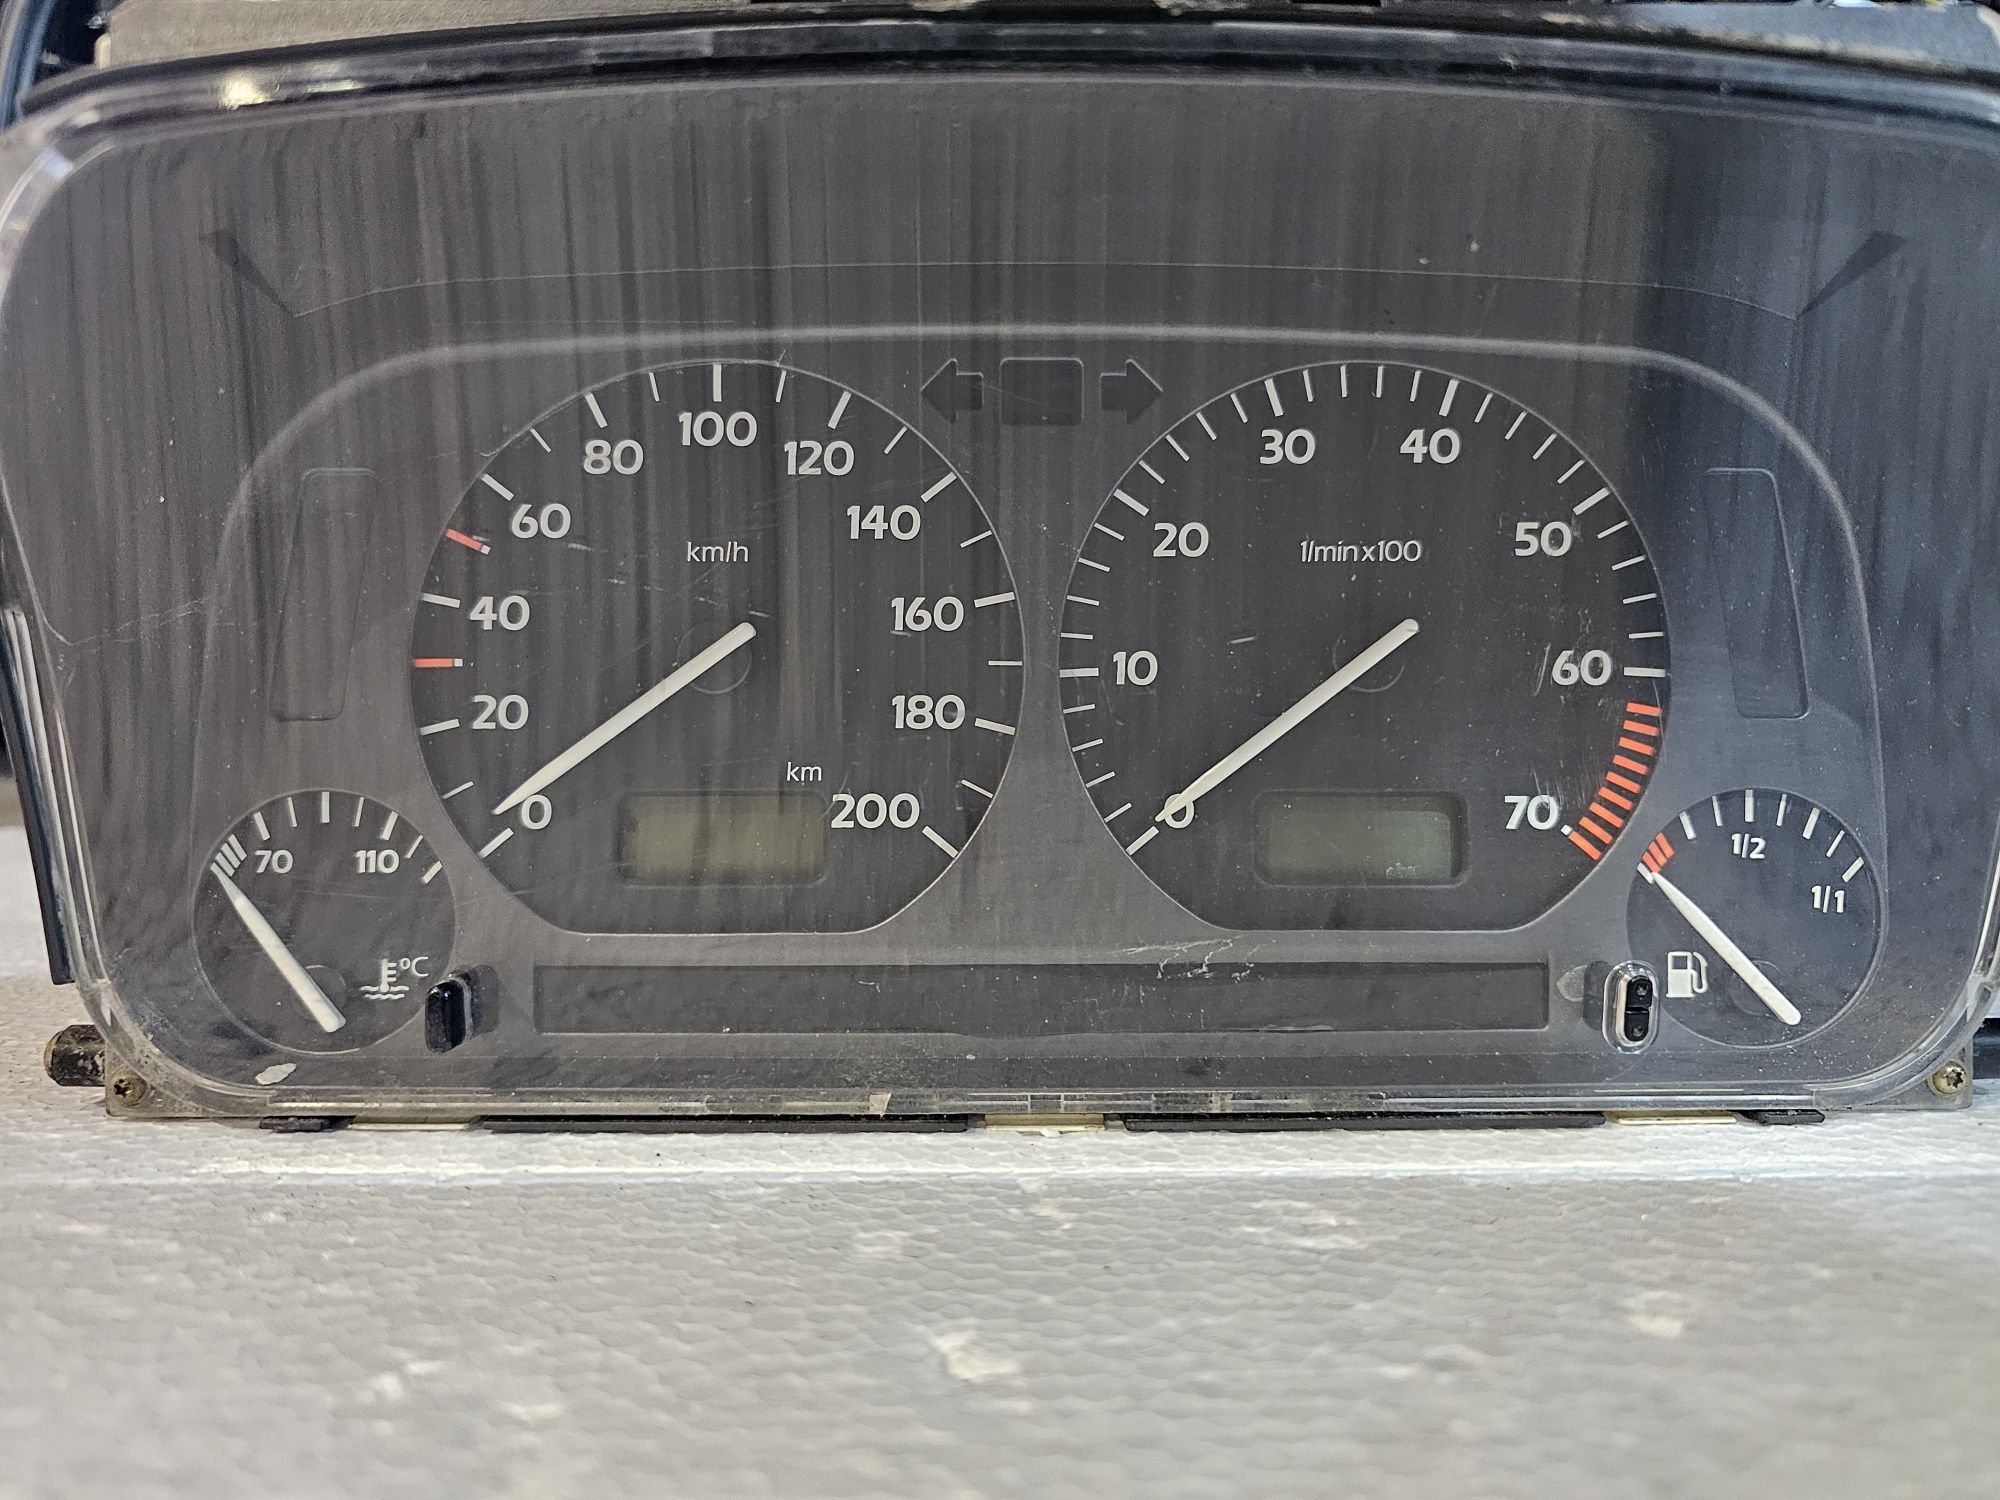 Ceasuri de bord originale Volkswagen Golf 3 / Vento

Nu le cunosc star